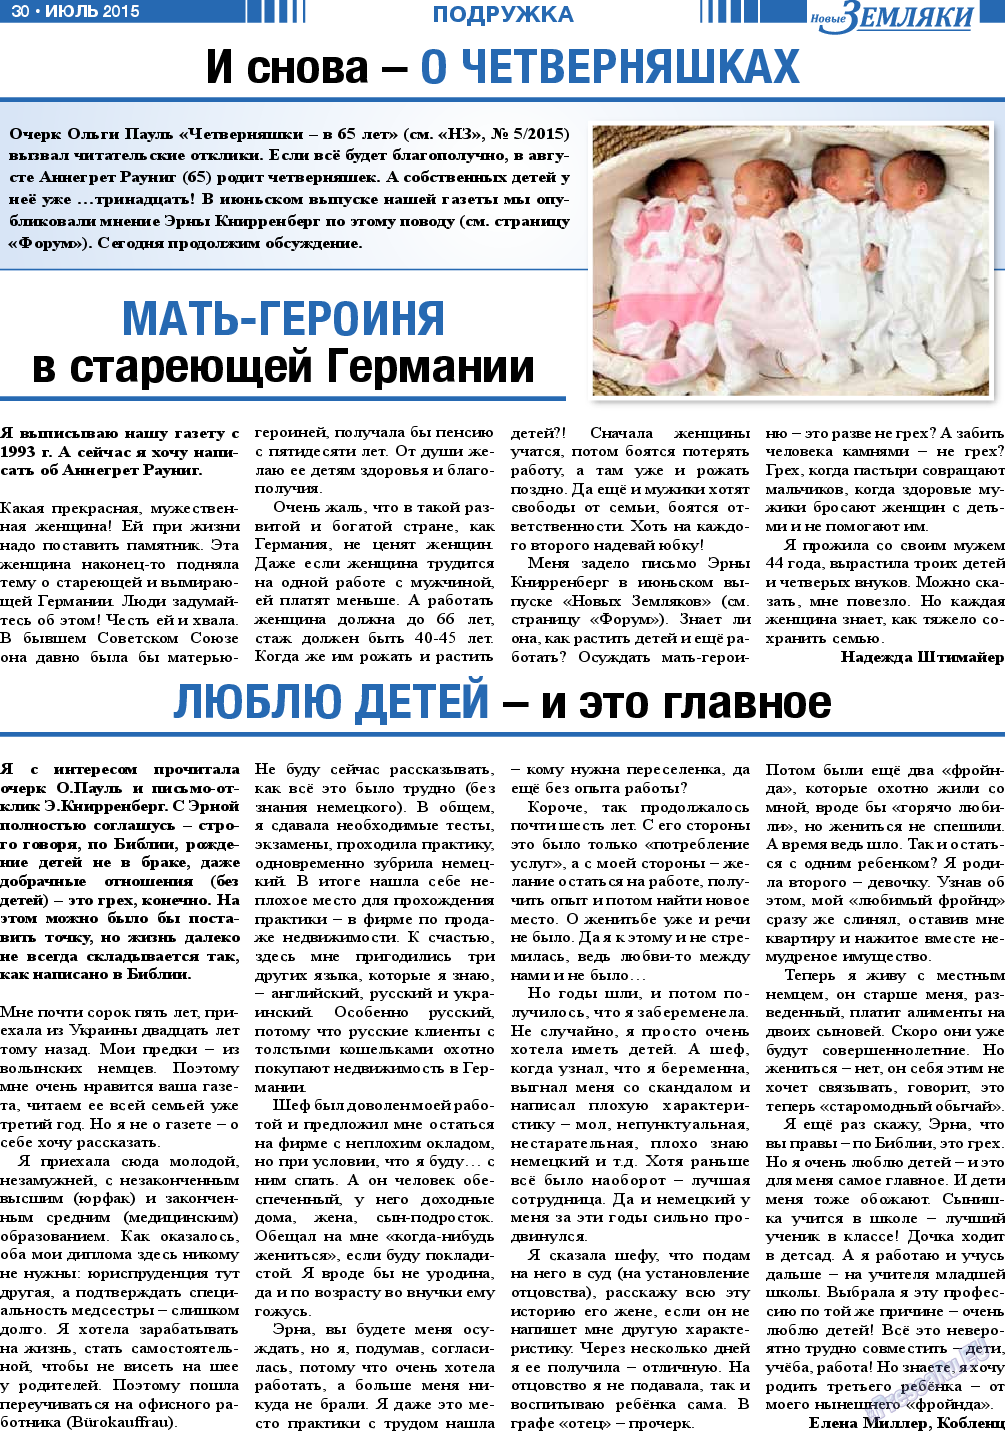 Новые Земляки, газета. 2015 №7 стр.30